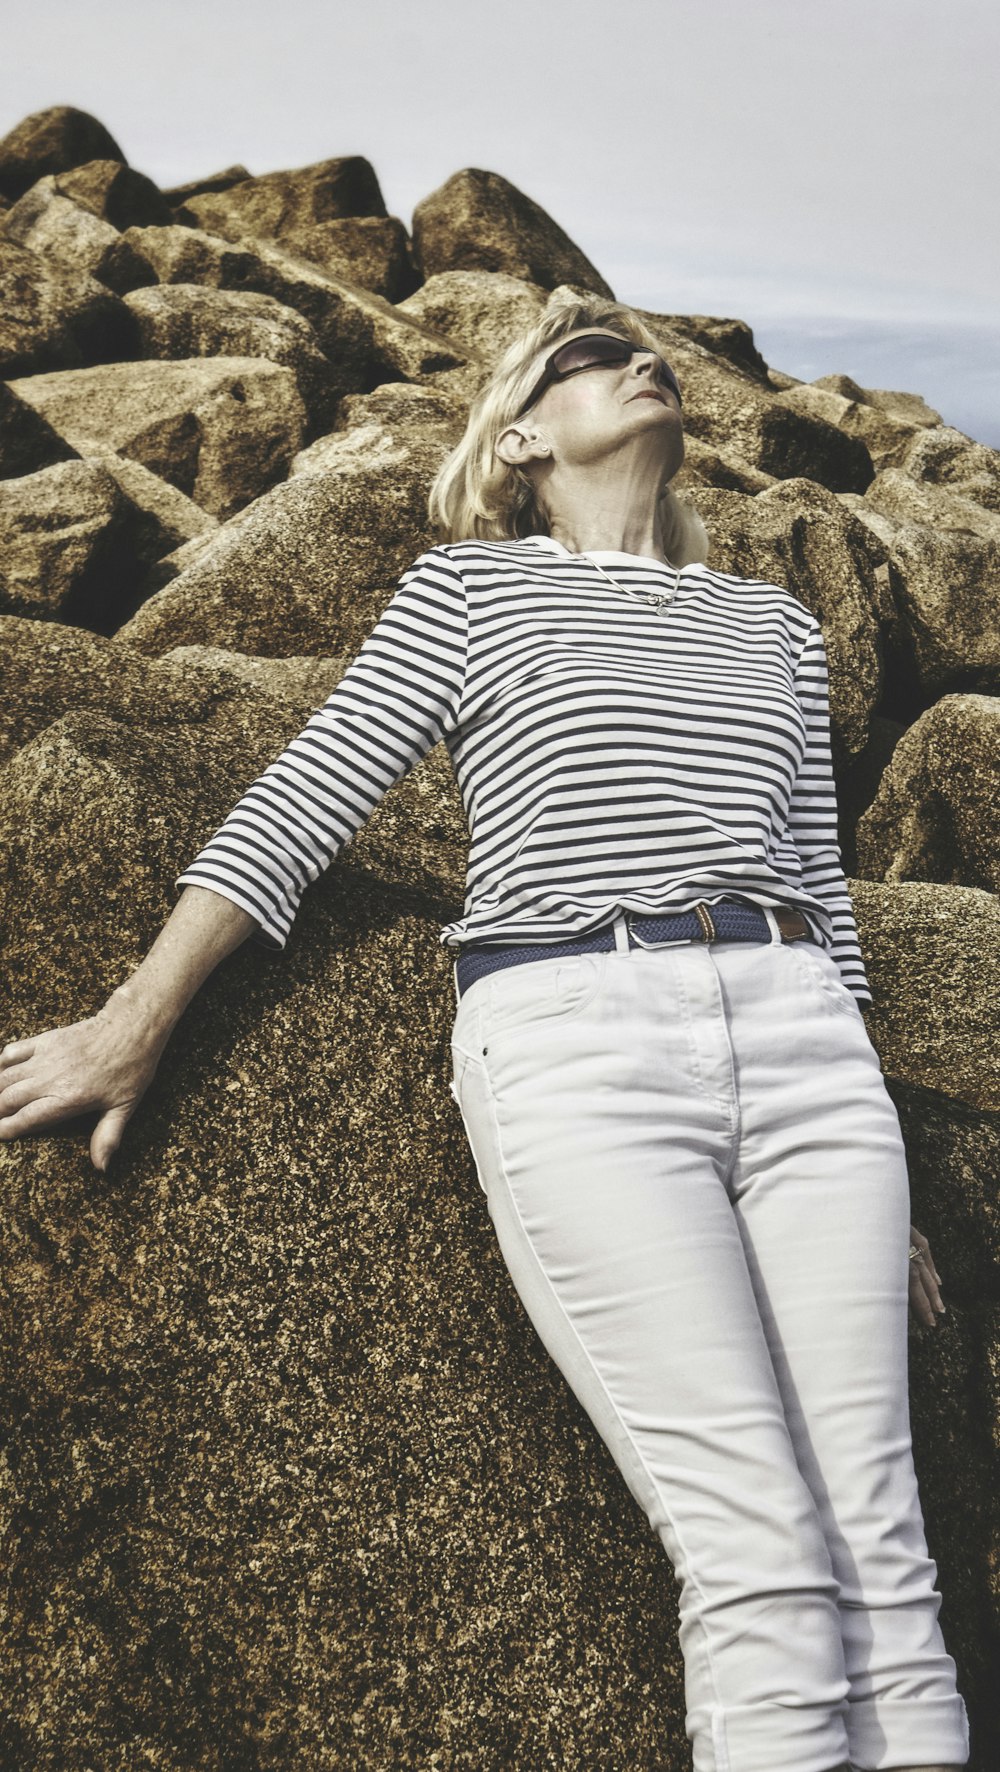 Encantador regla Obediencia Foto Mujer con camisa de manga larga a rayas blancas y negras y pantalón  blanco sentada en una roca marrón – Imagen Irlanda del norte gratis en  Unsplash